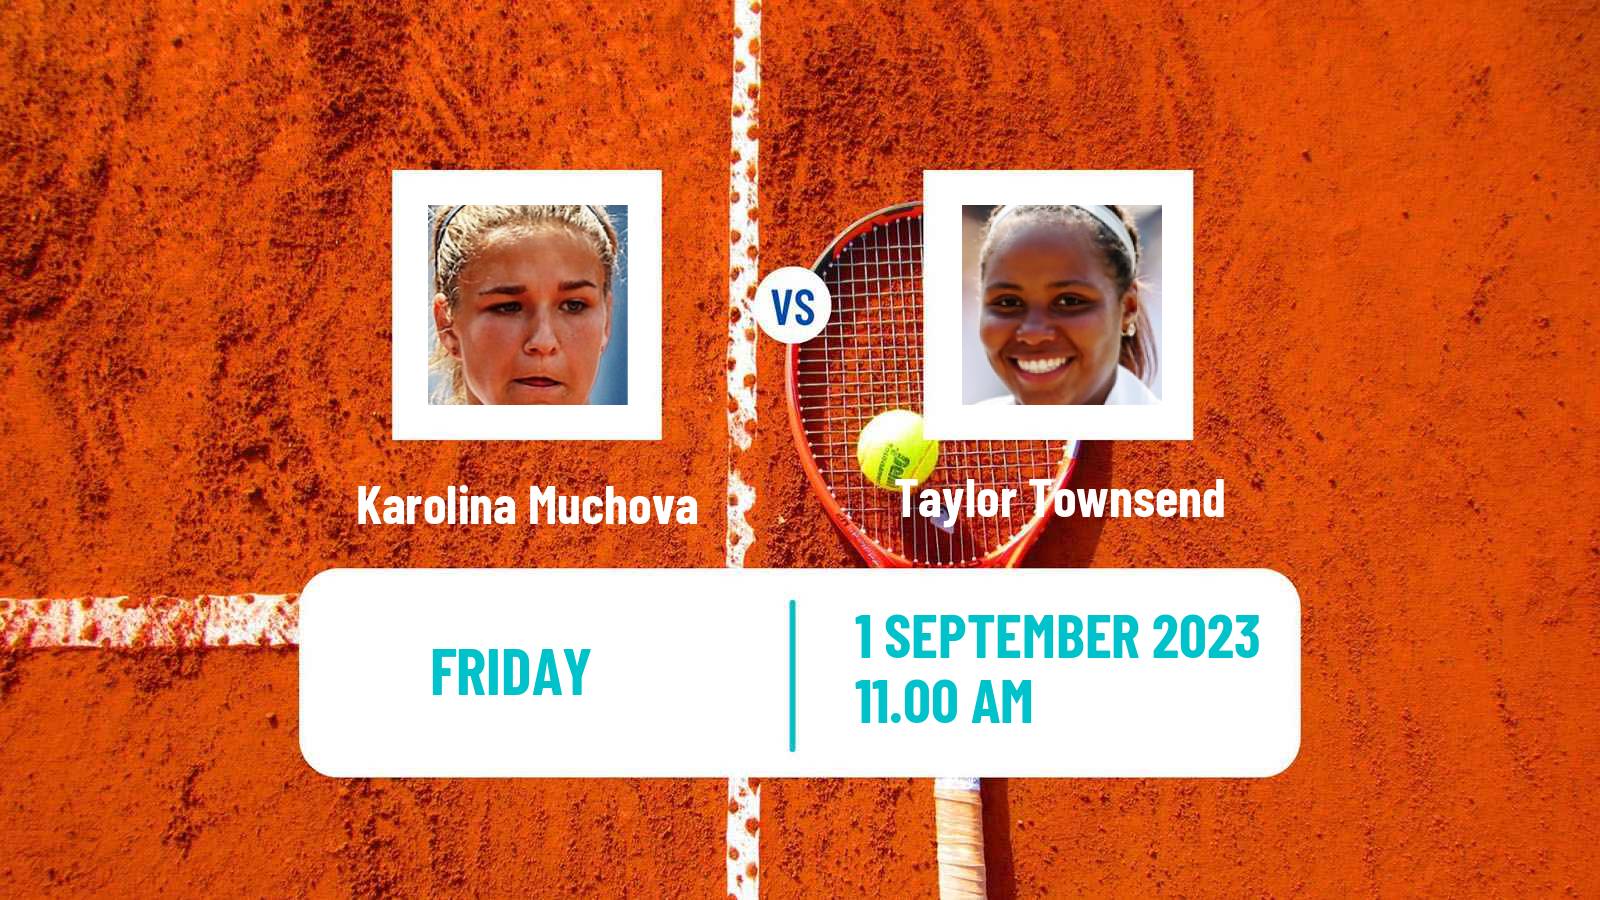 Tennis WTA US Open Karolina Muchova - Taylor Townsend